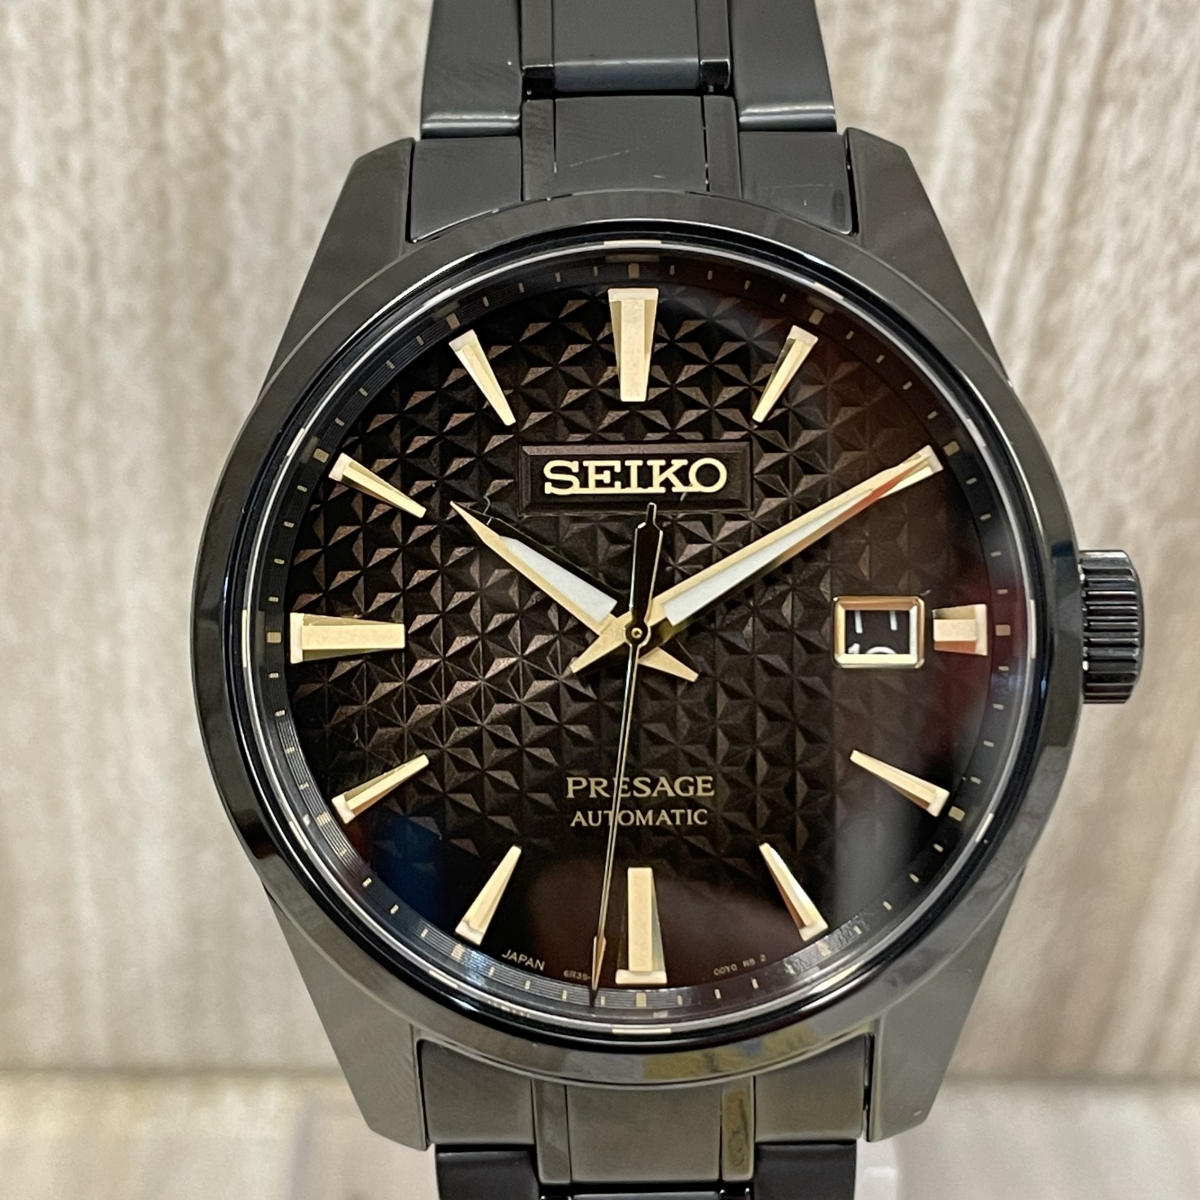 セイコーのプレサージュ SARX085 セイコー創業140周年記念 1500本限定 自動巻き時計の買取実績です。